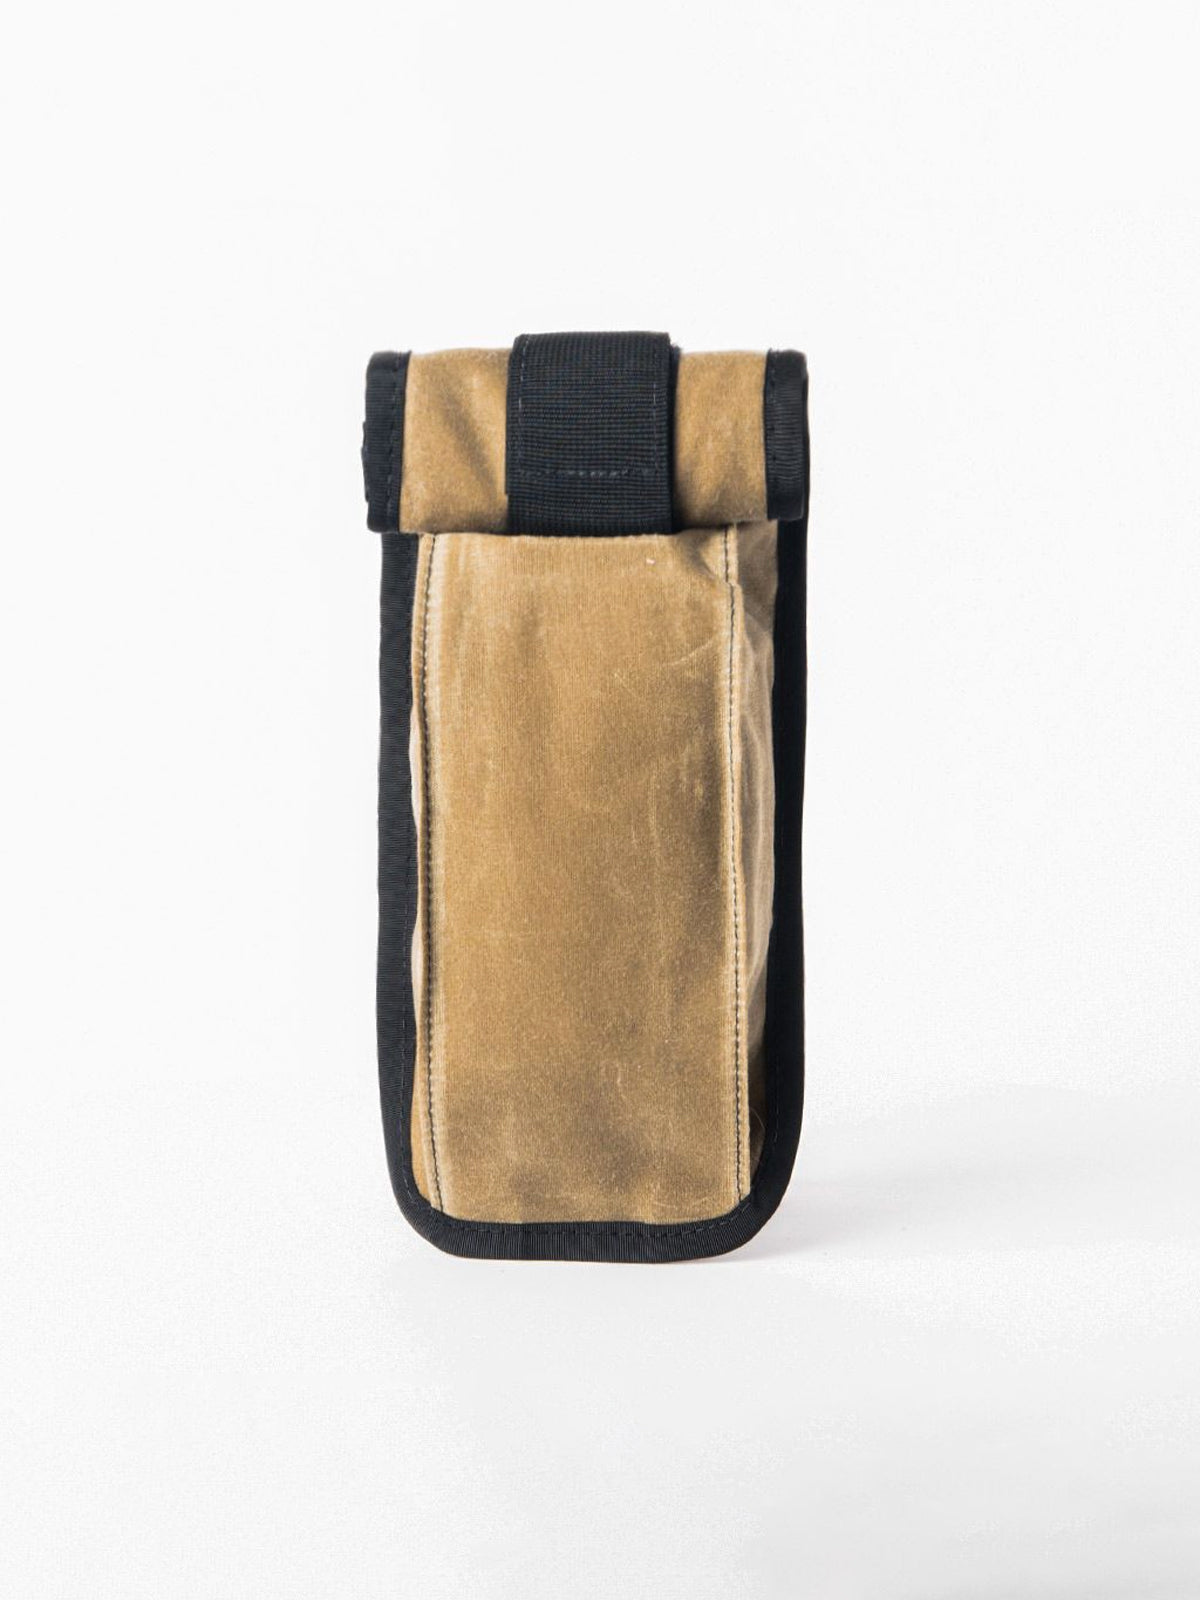 Arkiv Vertical Rolltop Pocket by Mission Workshop - Bolsas impermeables y ropa técnica - San Francisco y Los Angeles - Construidas para durar - Garantizadas para siempre